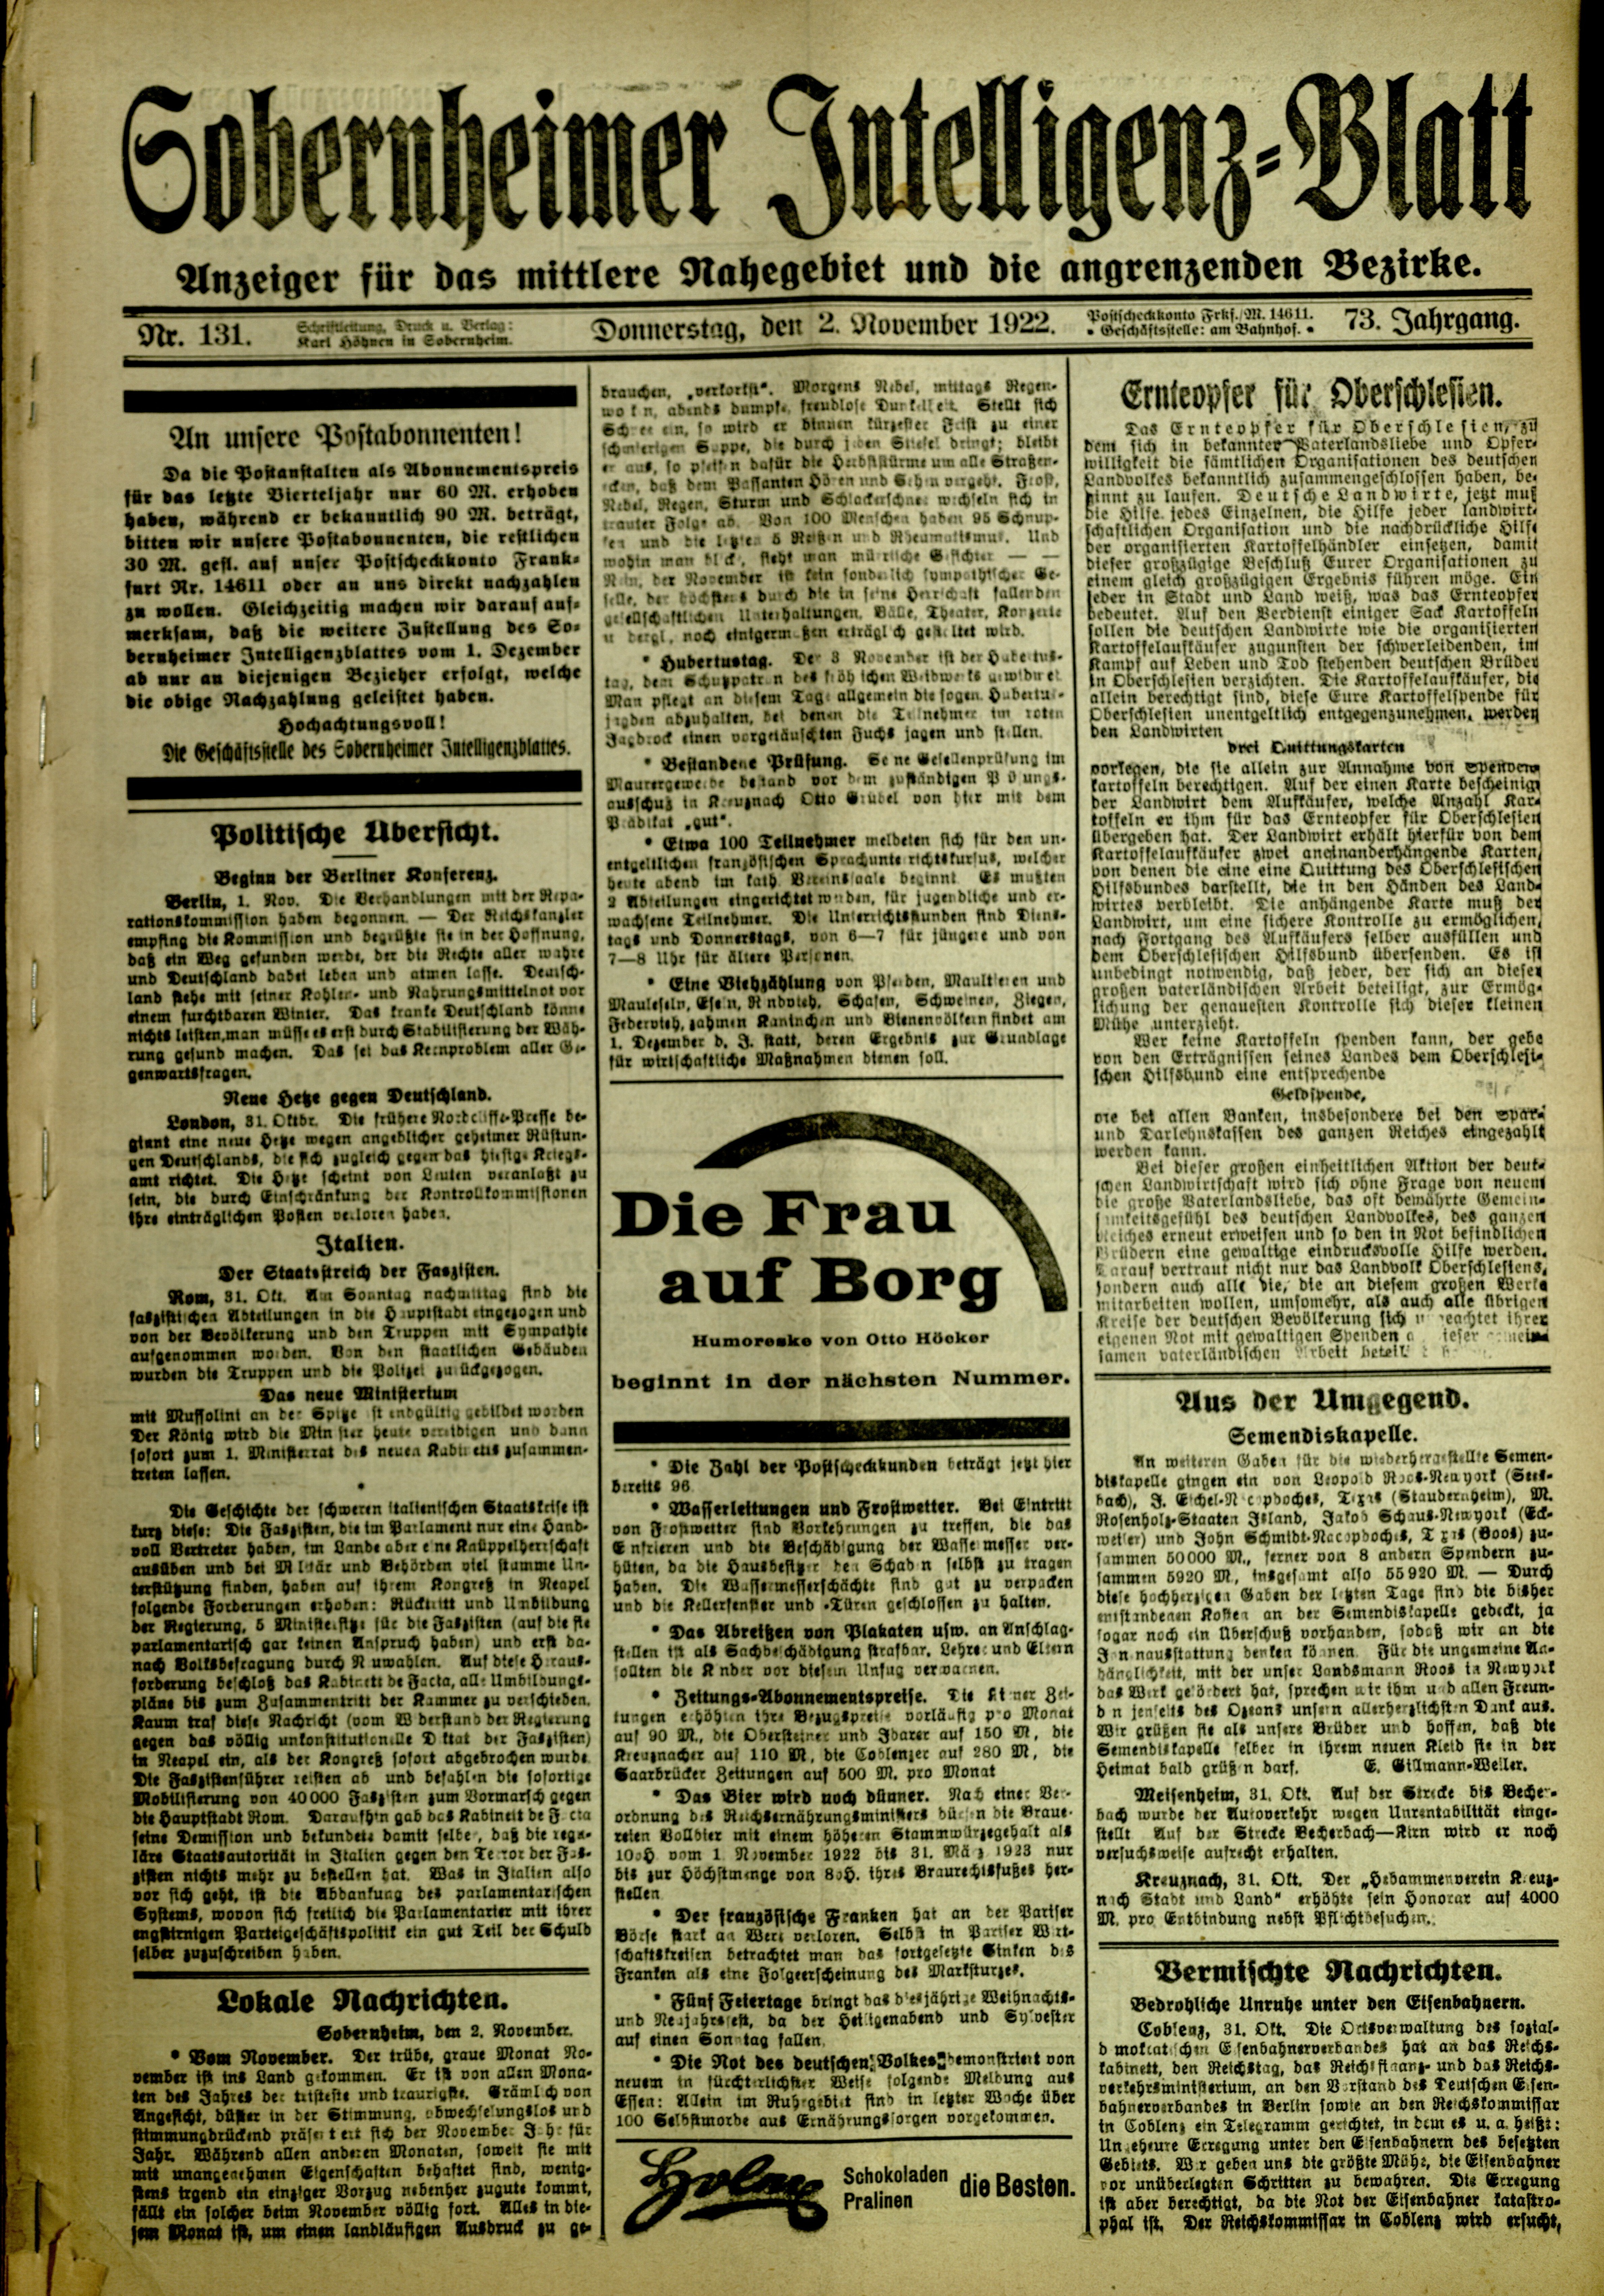 Zeitung: Sobernheimer Intelligenzblatt; November 1922, Jg. 73 Nr. 131 (Heimatmuseum Bad Sobernheim CC BY-NC-SA)